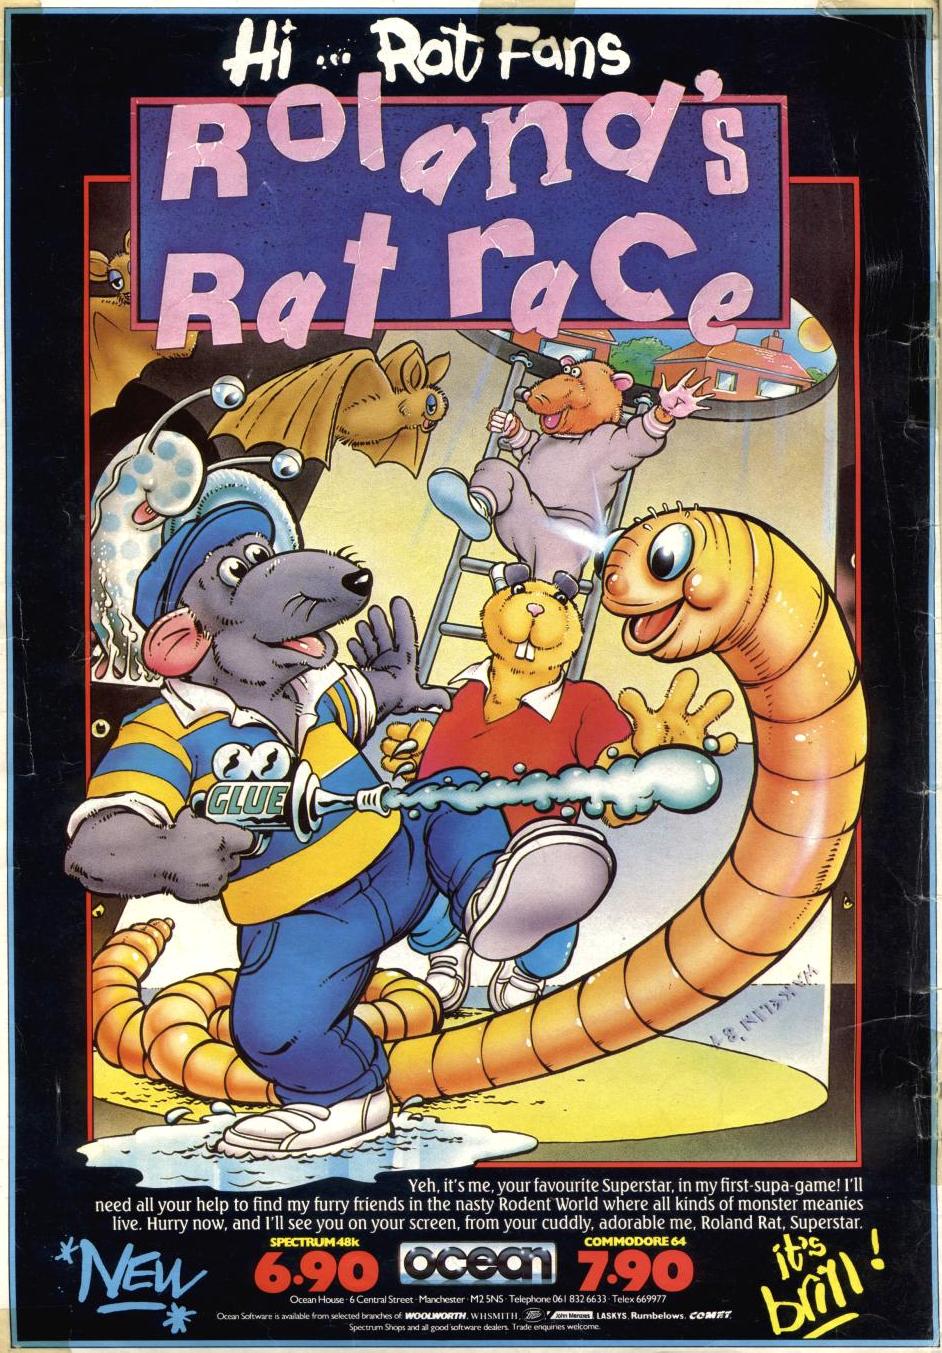 advertisement, Roland's Rat Race